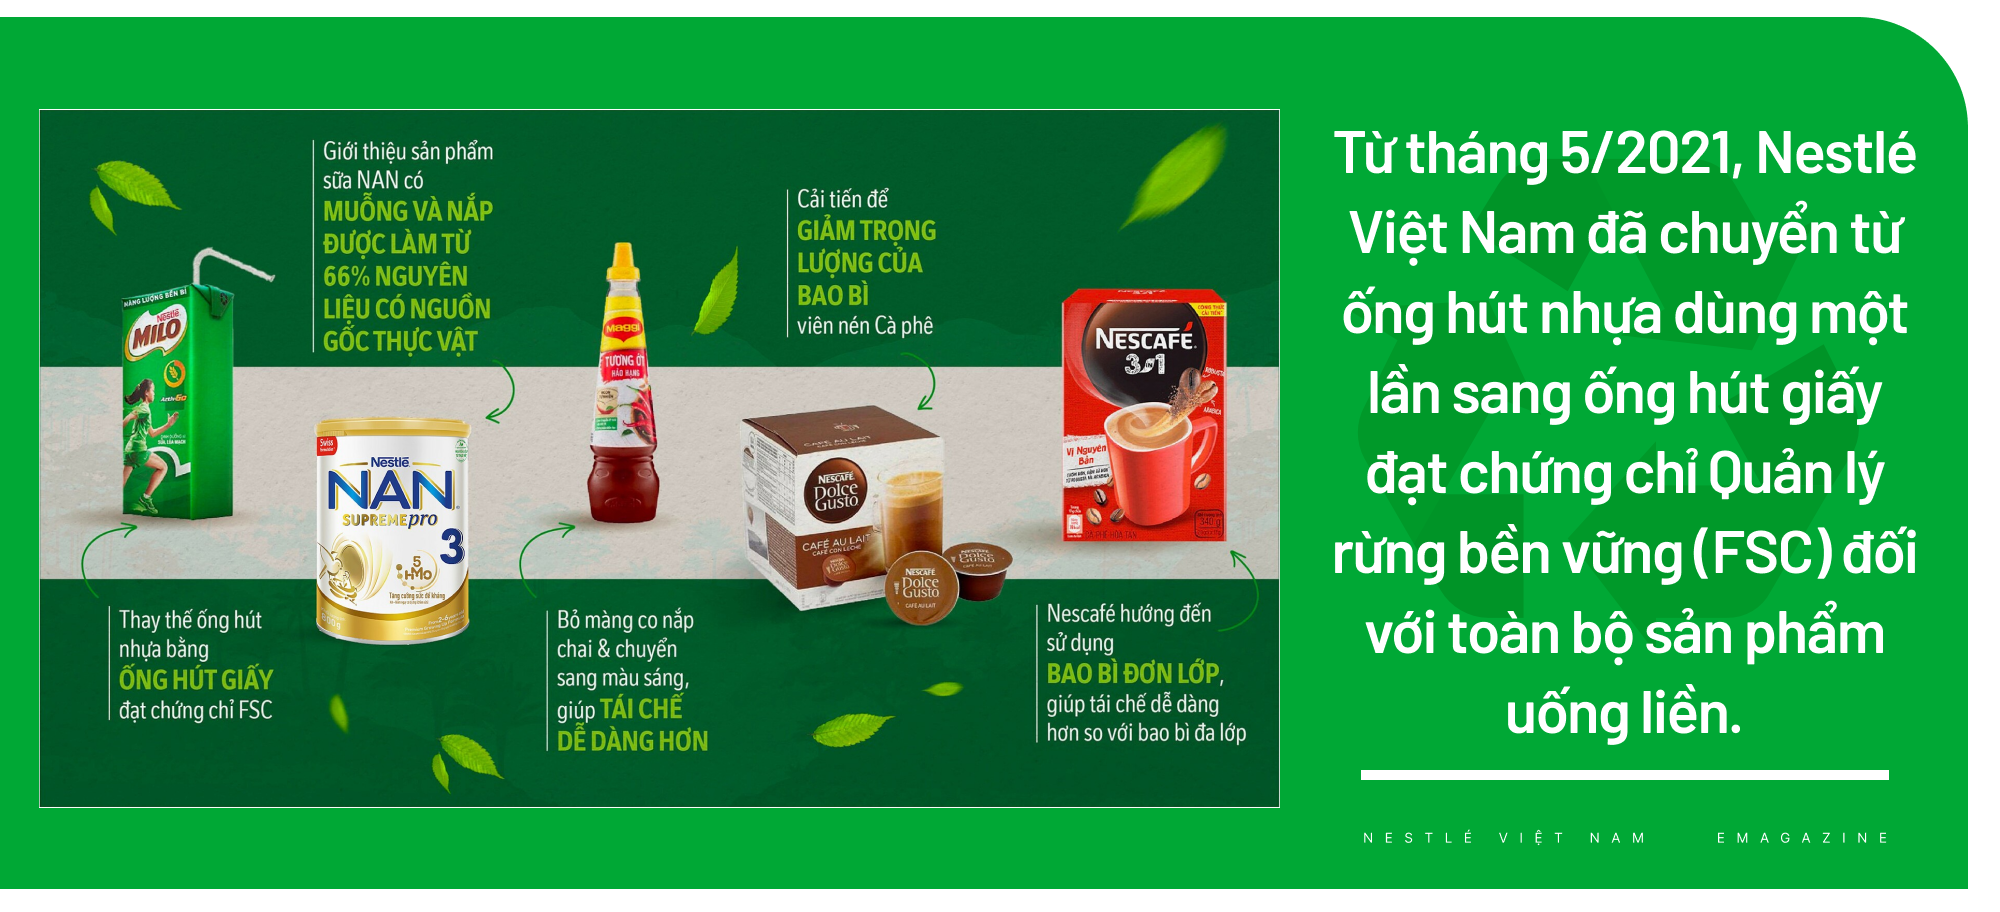 Nestlé Việt Nam áp dụng sáng kiến bao bì bền vững,xây dựng nền kinh tế tuần hoàn - Ảnh 2.